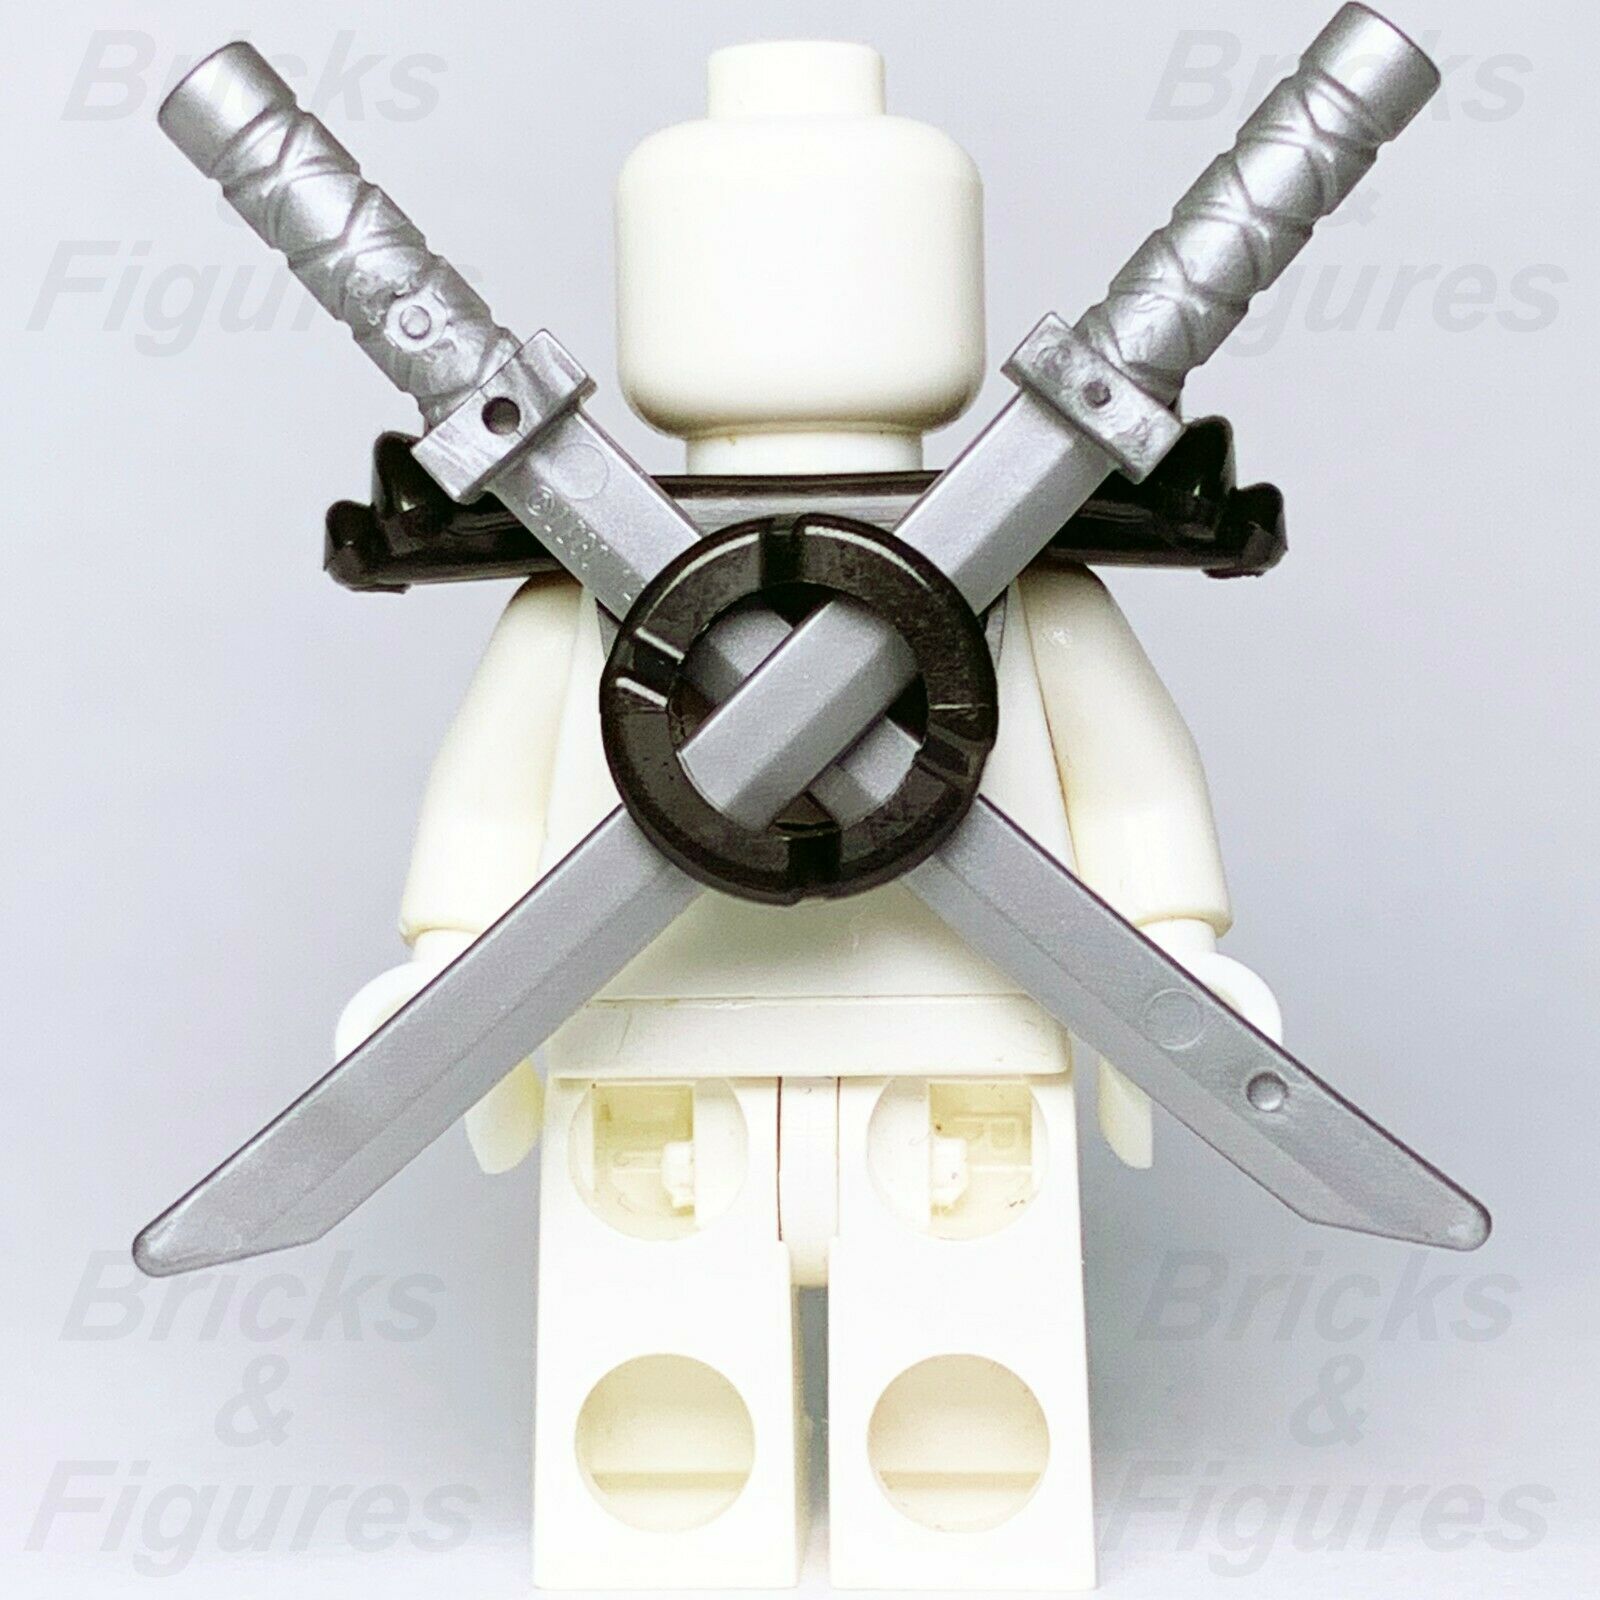 5 x Ninjago LEGO Flat Silver Ninja Katana Sword Warrior Minifigure Wea